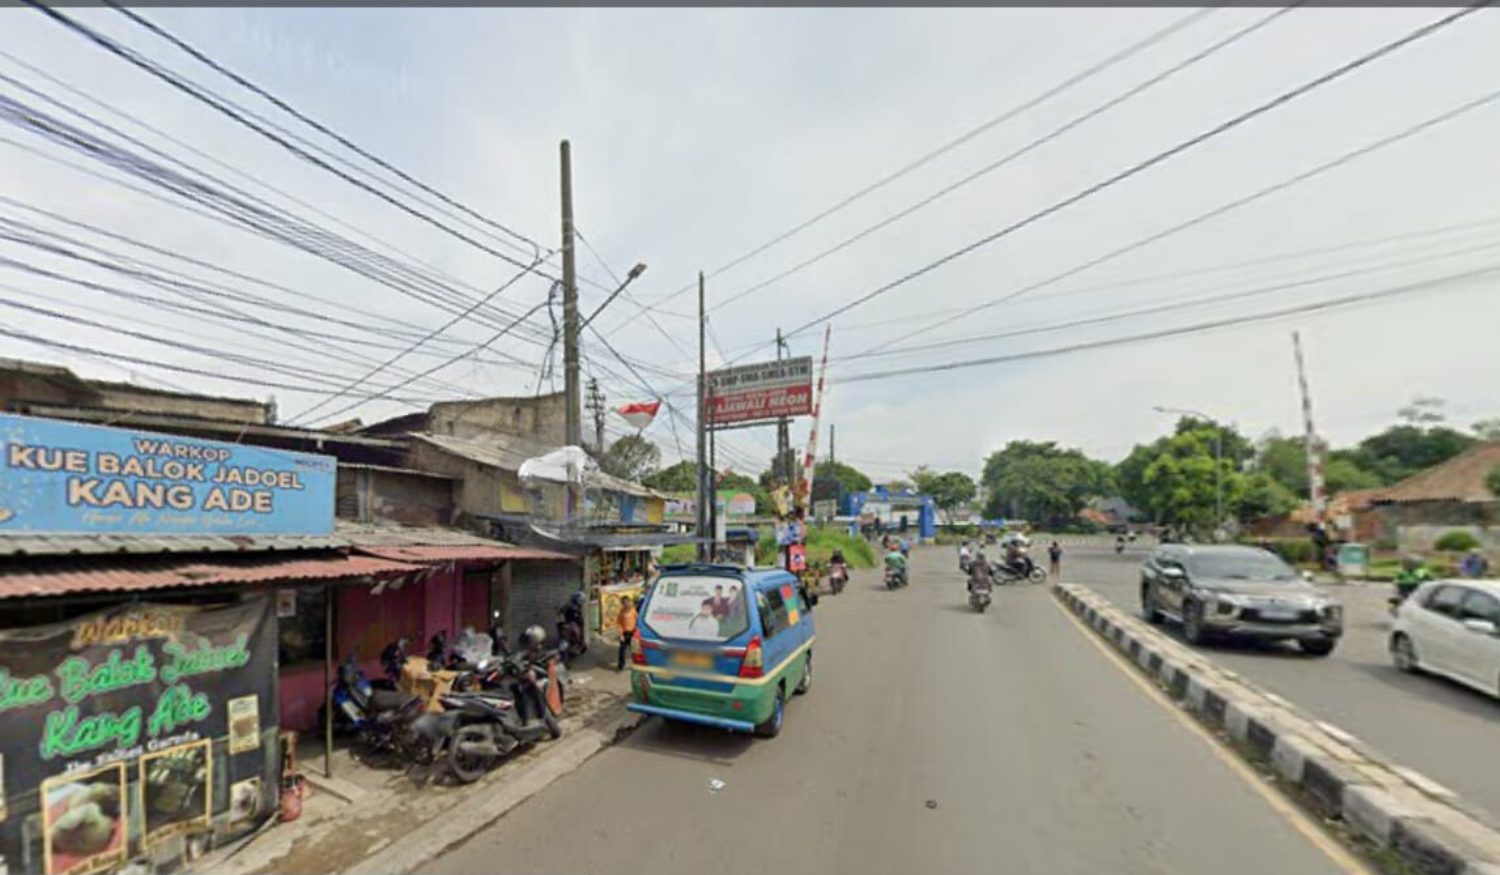 Lokasi Pembangunan Fly Over Nurtanio, Kota Bandung, yang sedang dikerjakan BBPJN DKI Jakarta-Jawa Barat, Kementerian PUPR.